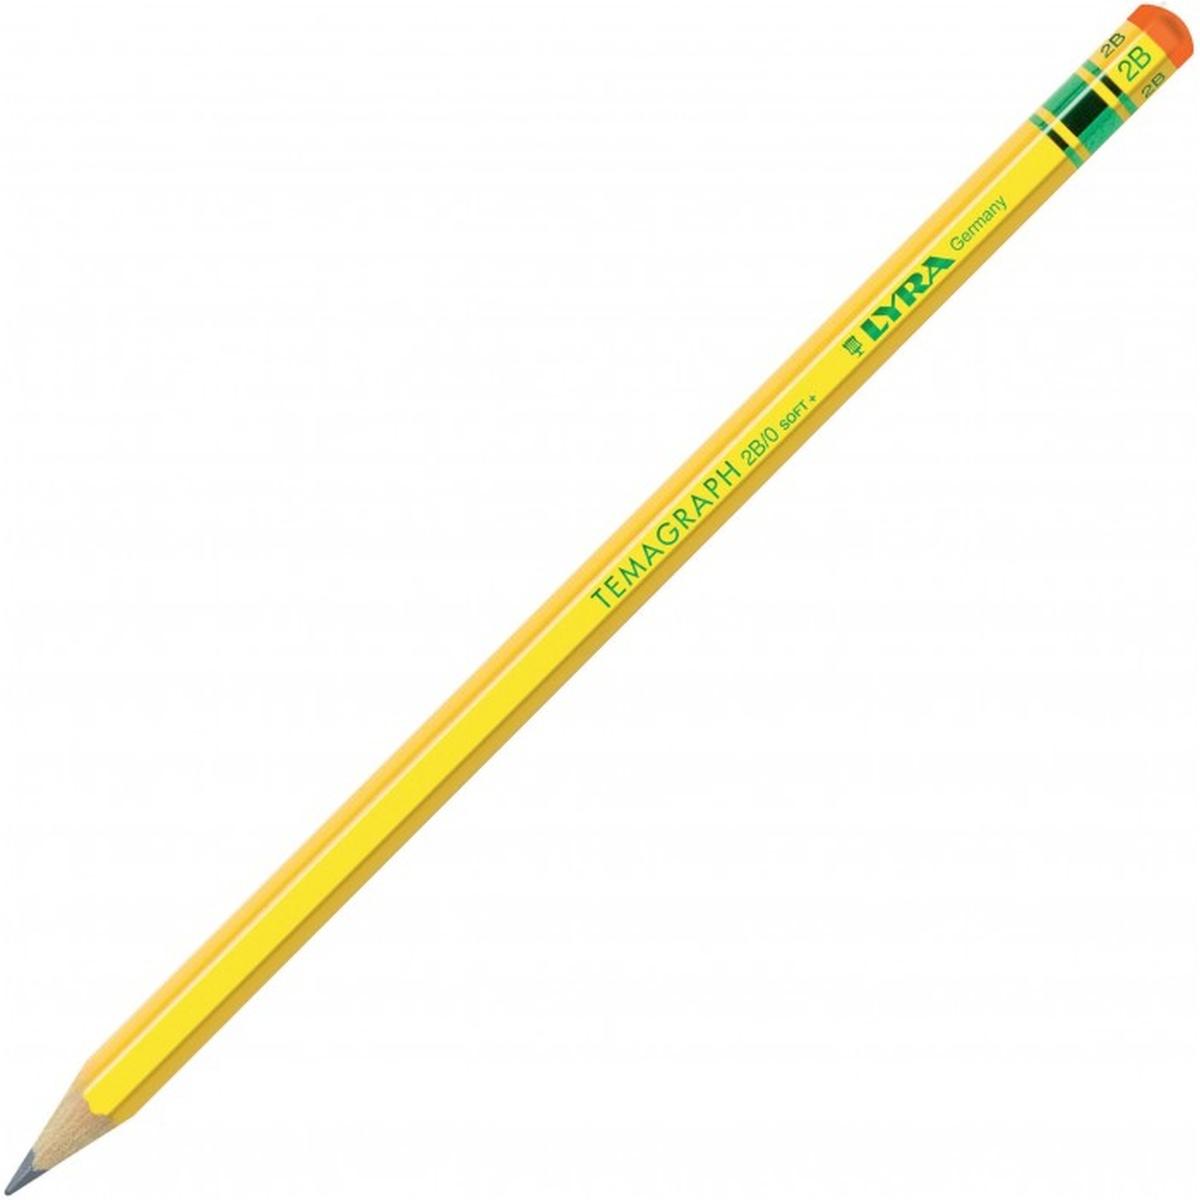 Ailvor Matita per scuola elementare, 12 matite HB Easy start con